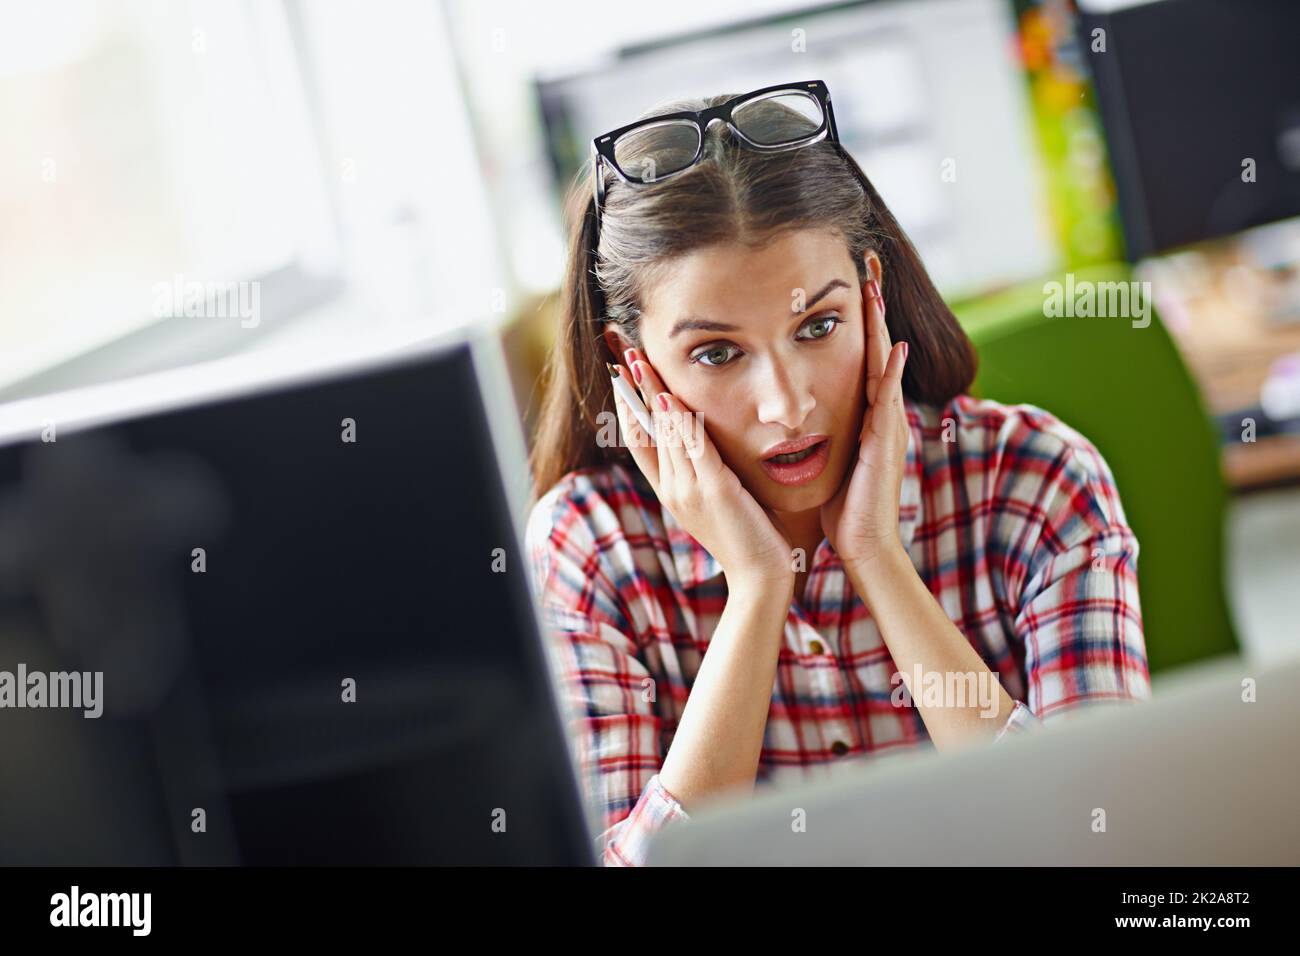 Das kann nicht richtig sein. Aufnahme einer jungen Frau, die überraschend auf ihren Computerbildschirm schaut. Stockfoto